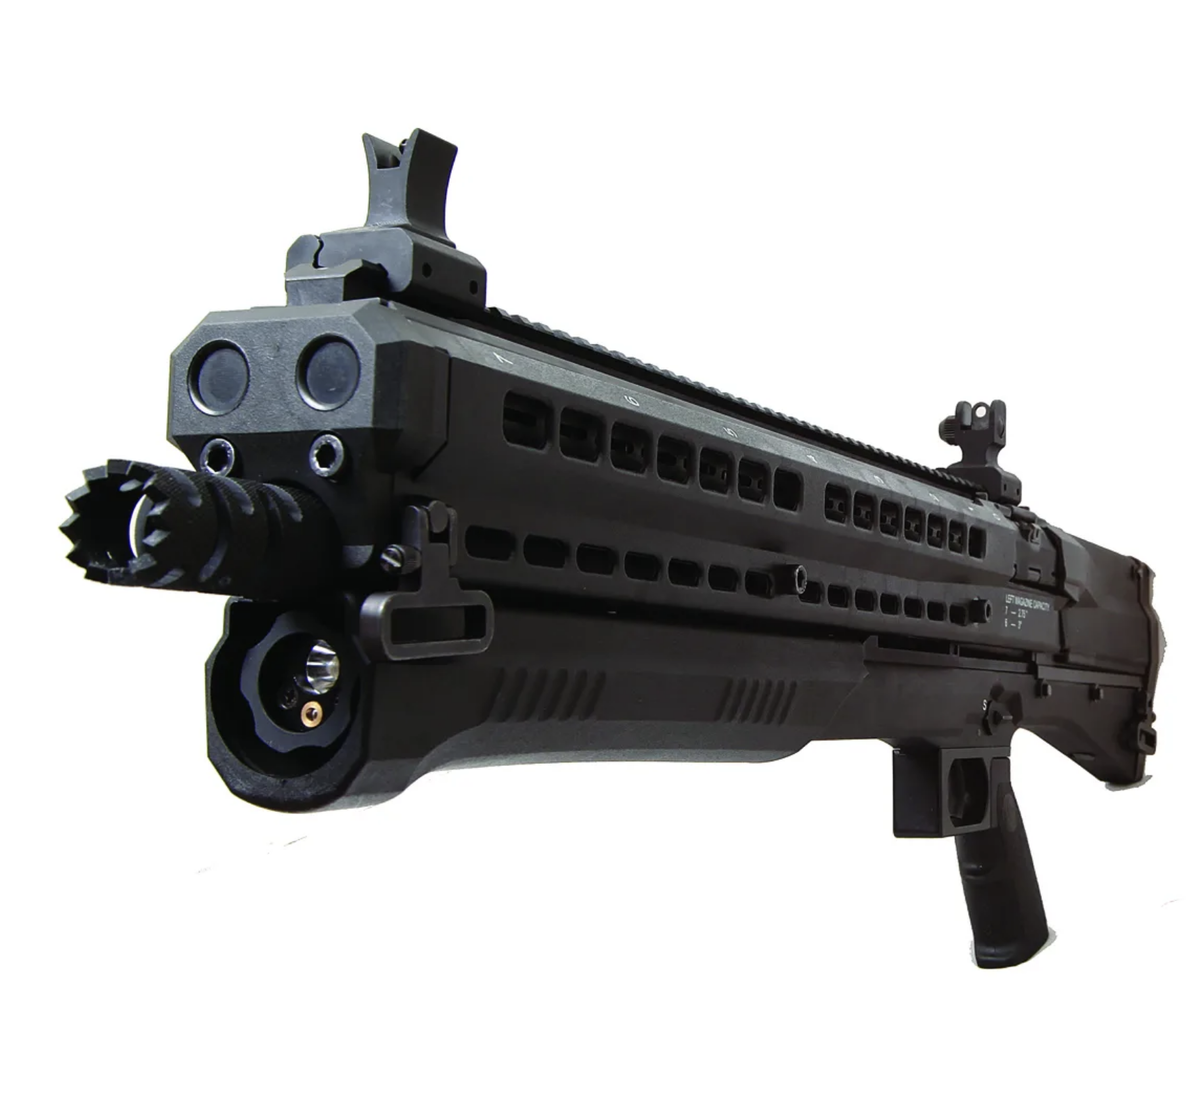 Дробовик UTAS UTS-15 — это гладкоствольное ружье, разработанное и производимое турецкой компанией UTAS.-3